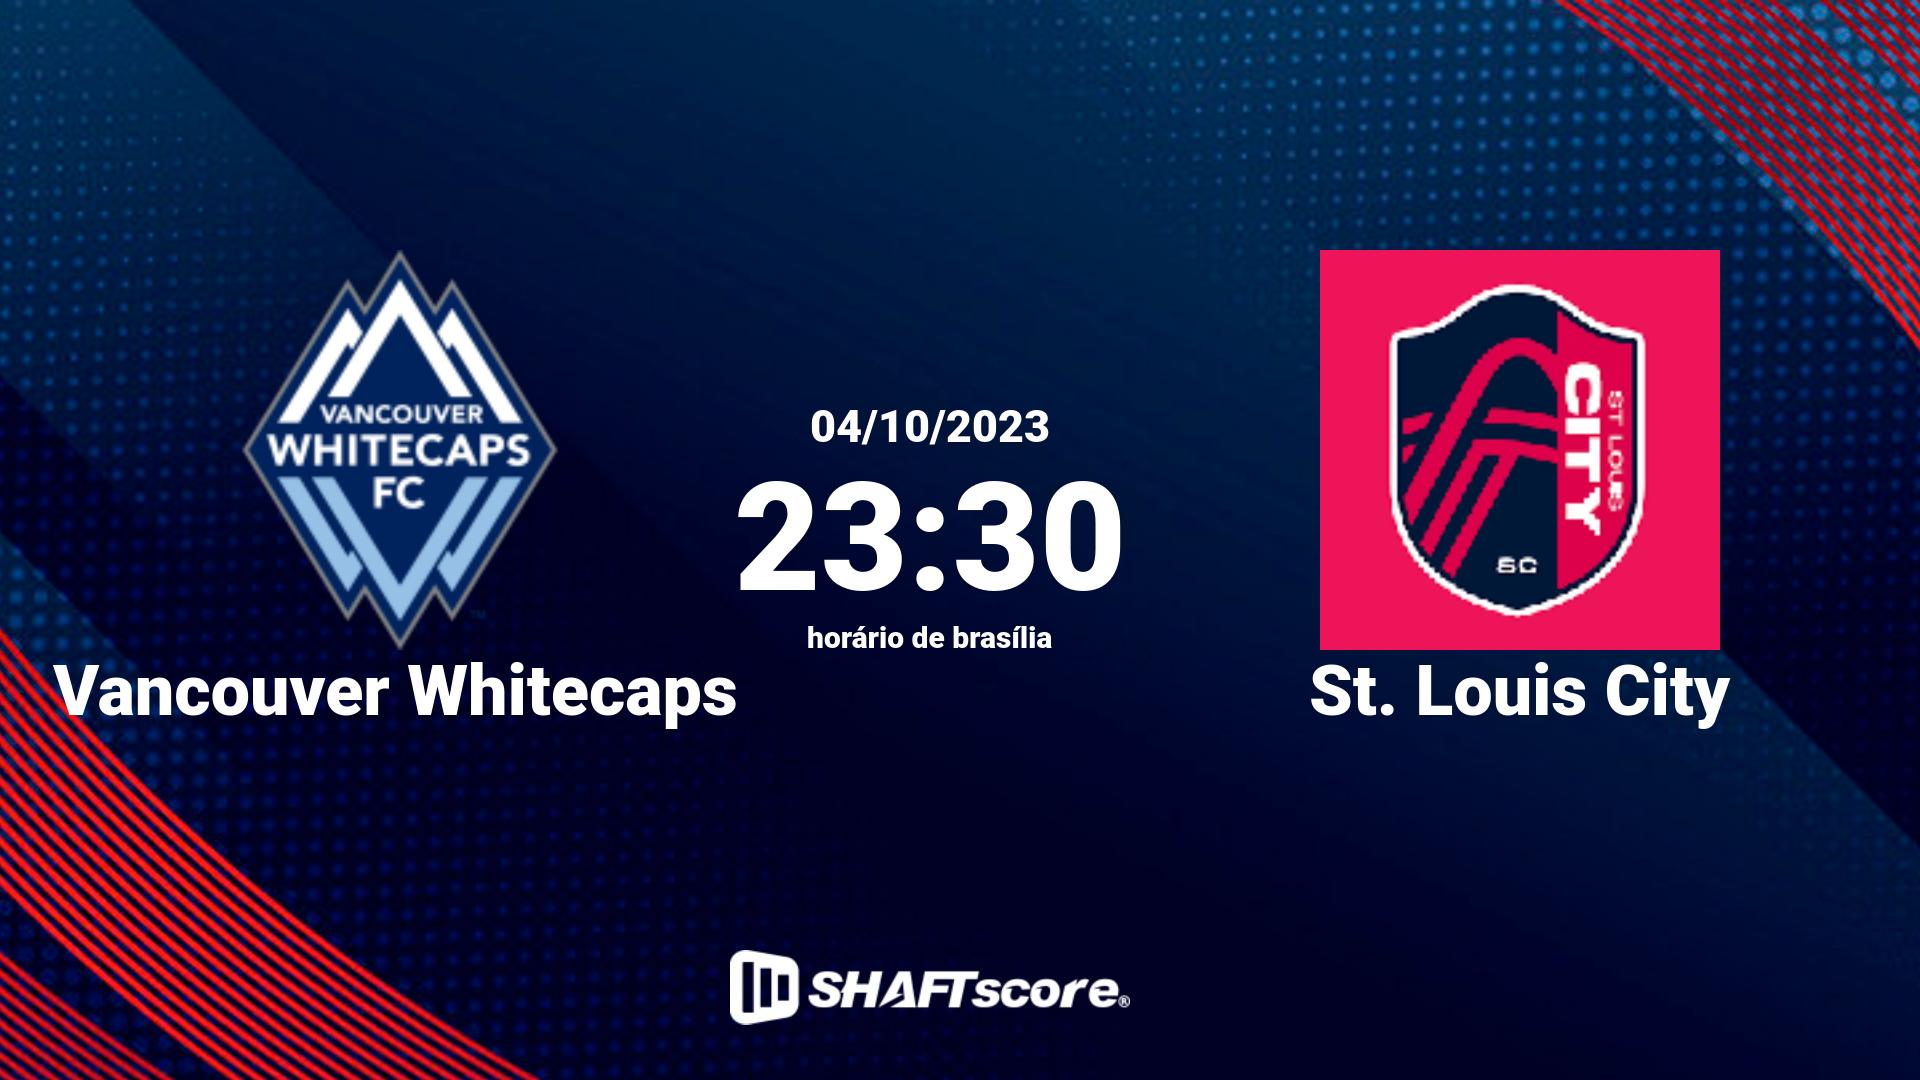 Estatísticas do jogo Vancouver Whitecaps vs St. Louis City 04.10 23:30